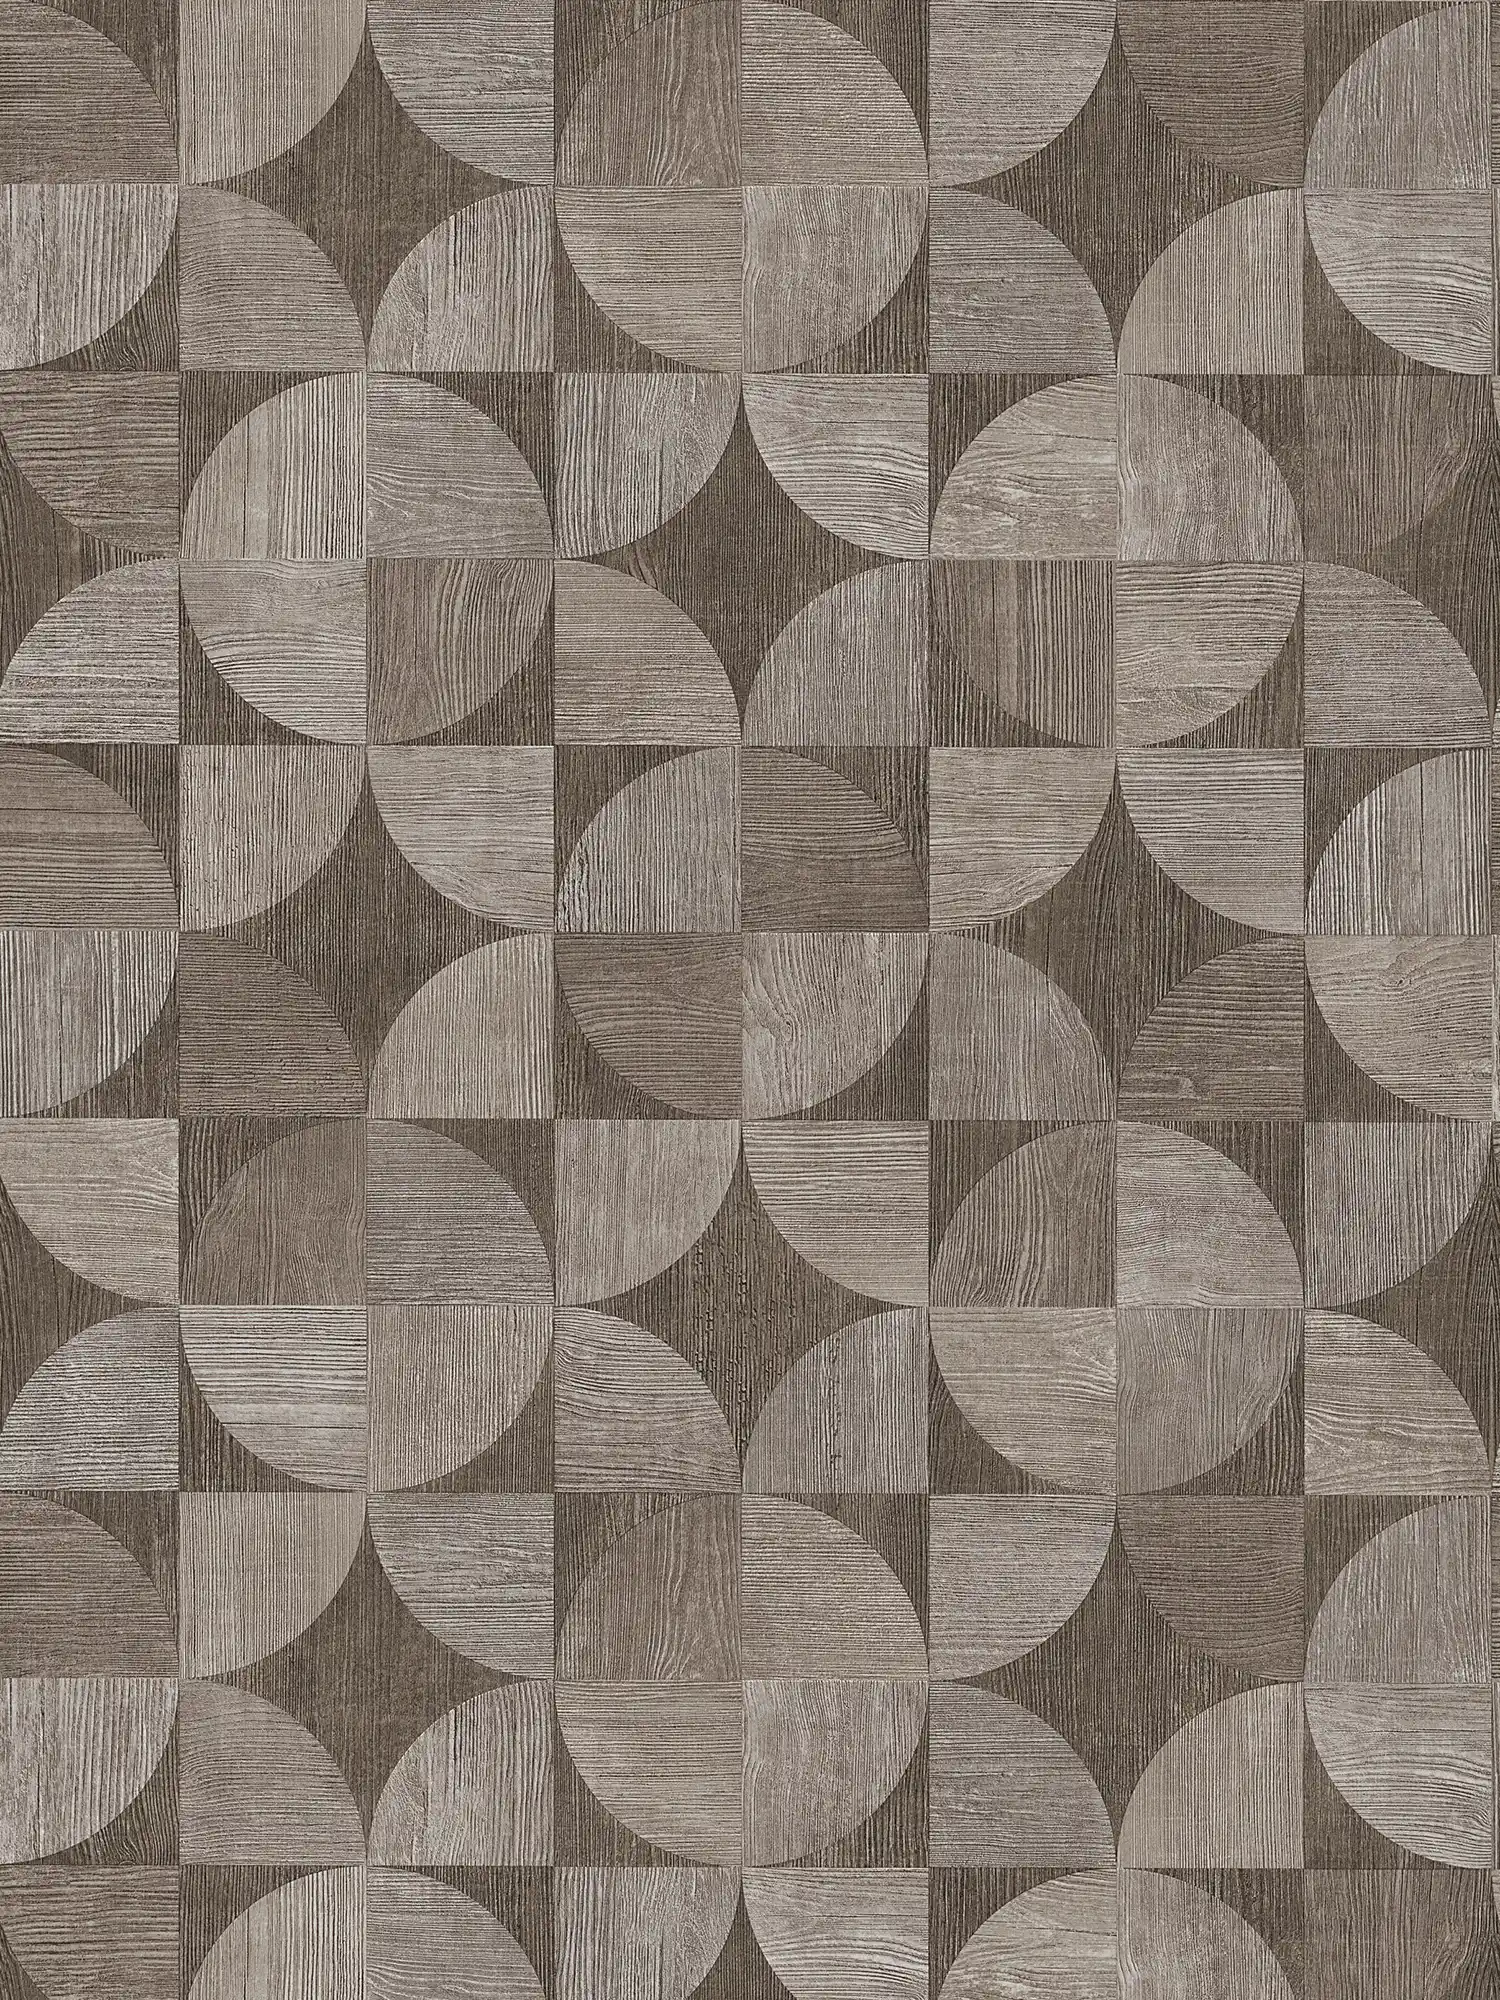 Tapete mit grafischem Muster in Holzoptik – Grau, Braun
